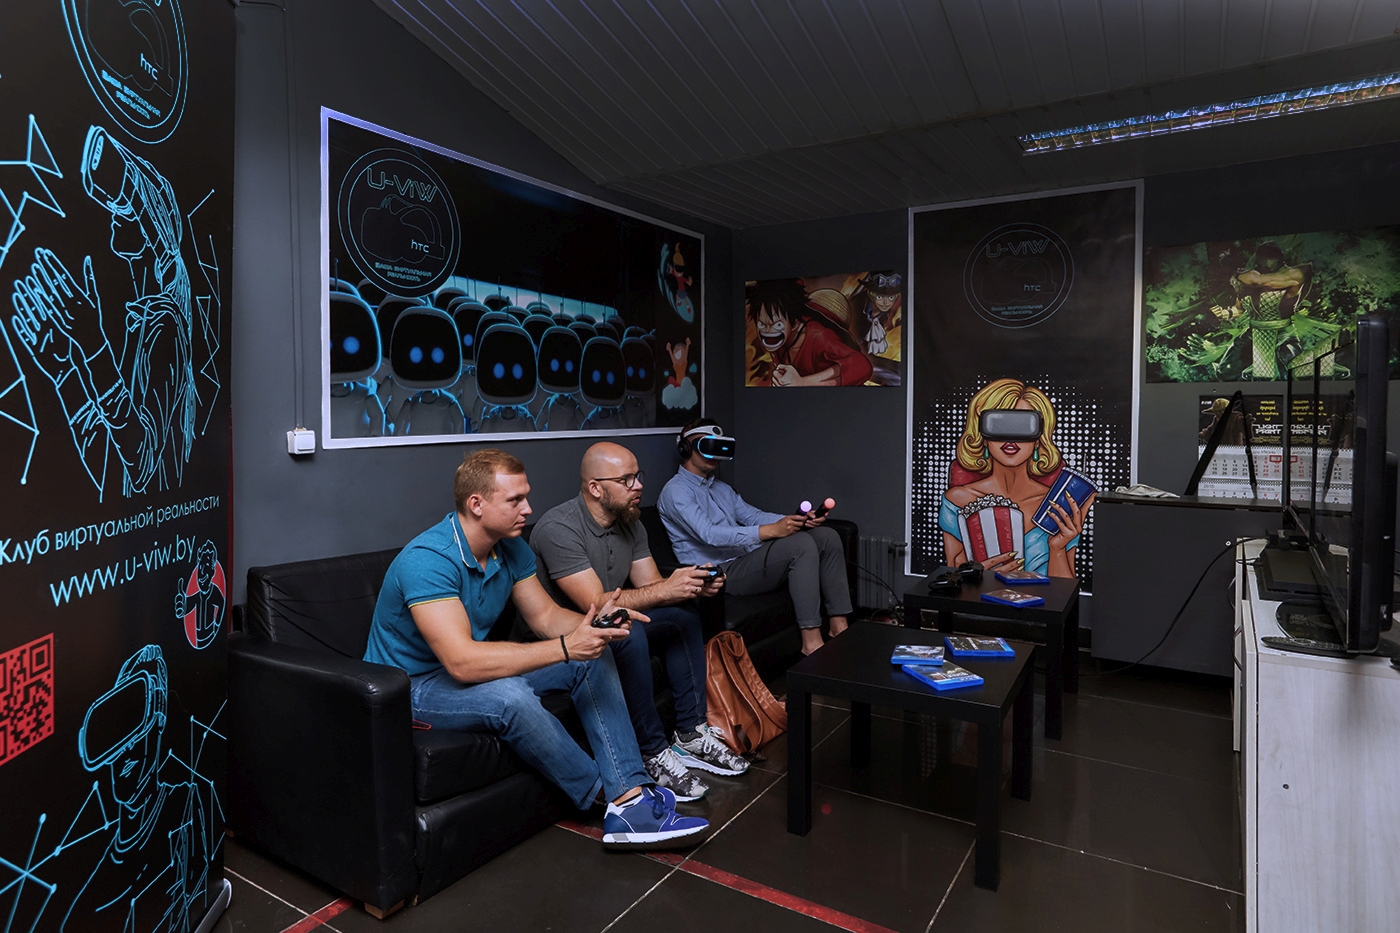 Посещение клуба виртуальной реальности «U-ViW»